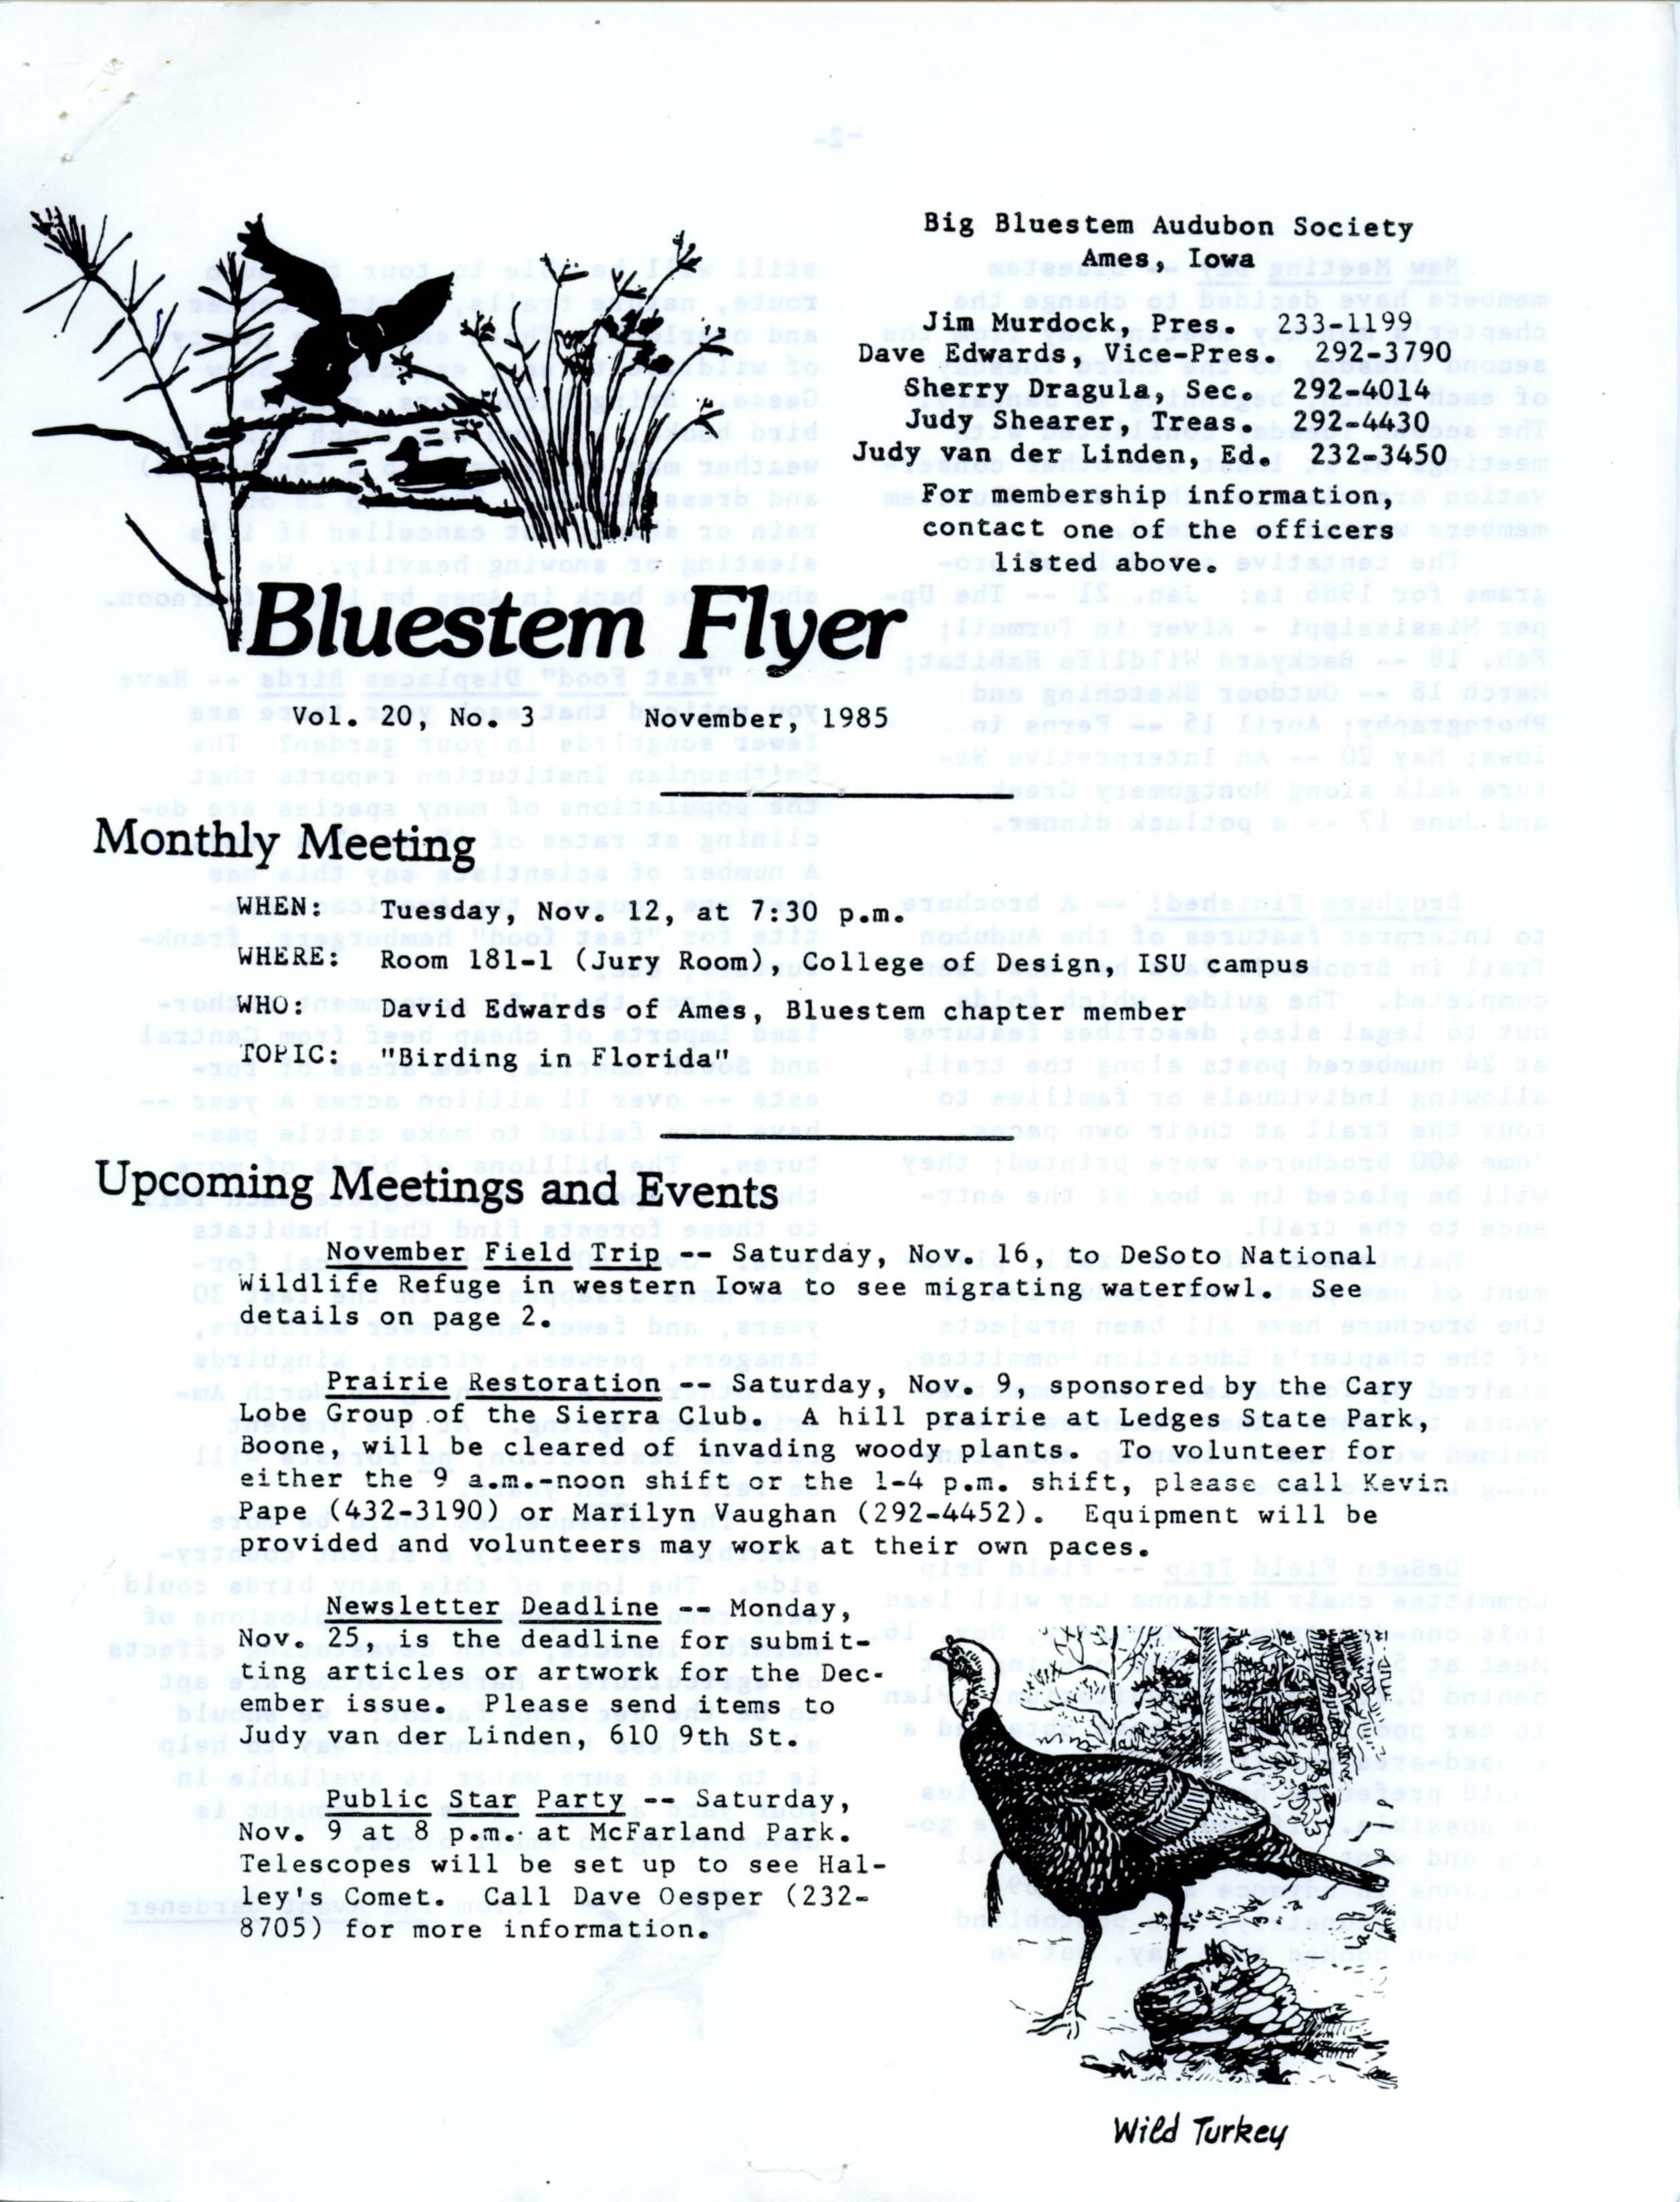 Bluestem Flyer, Volume 20, Number 3, November 1985